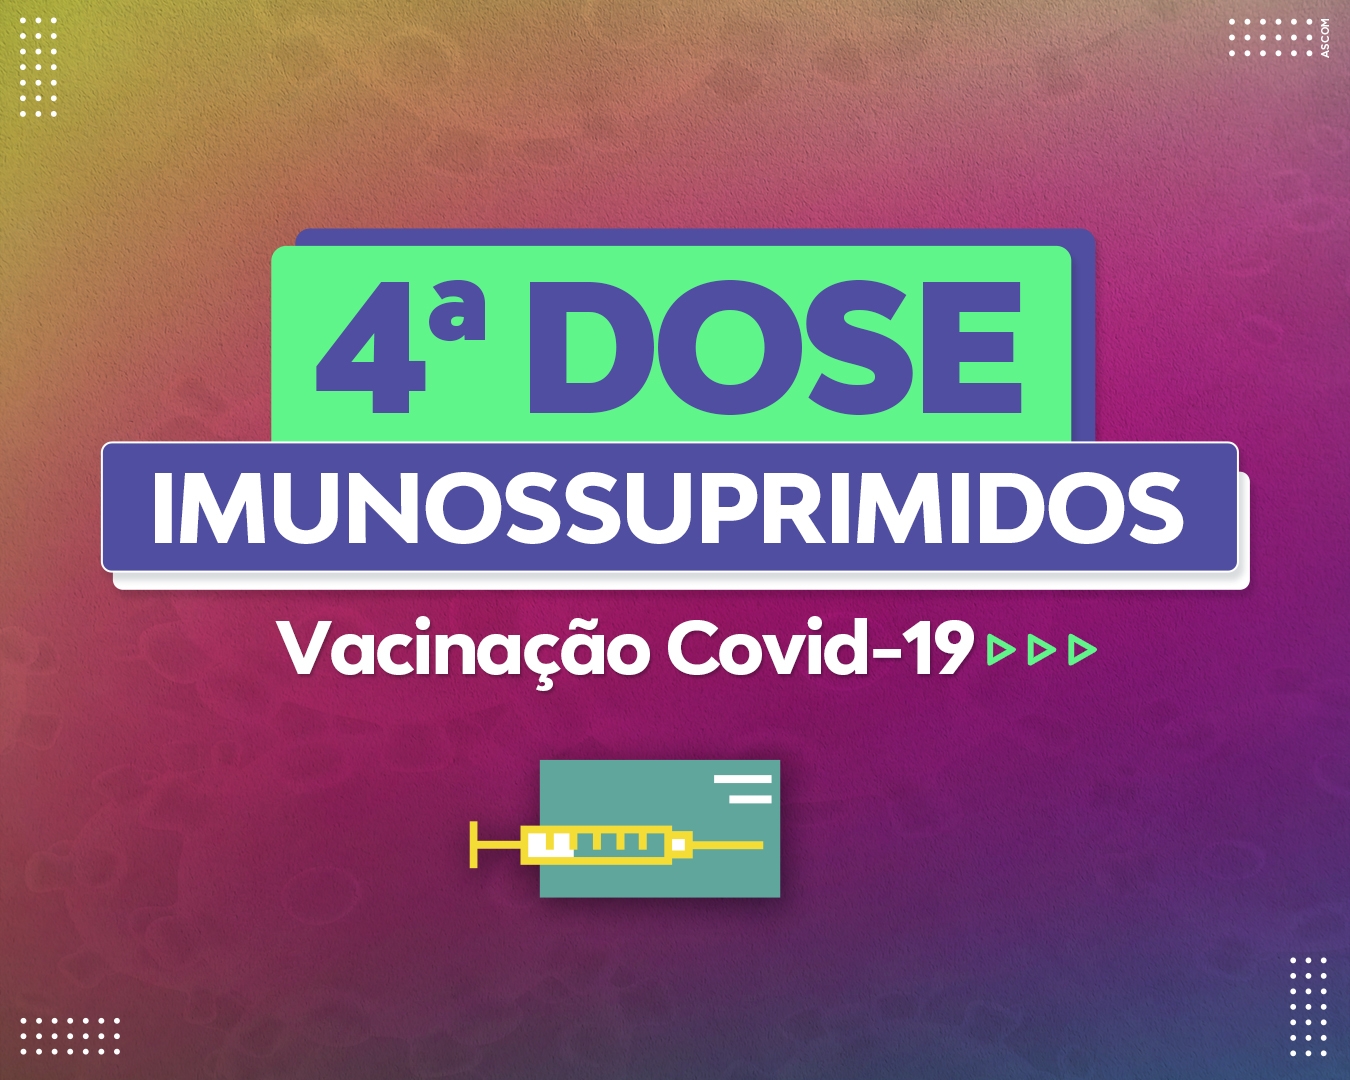 Covid-19: Lucas do Rio Verde disponibiliza 4ª dose para imunossuprimidos |  Prefeitura de Lucas do Rio Verde